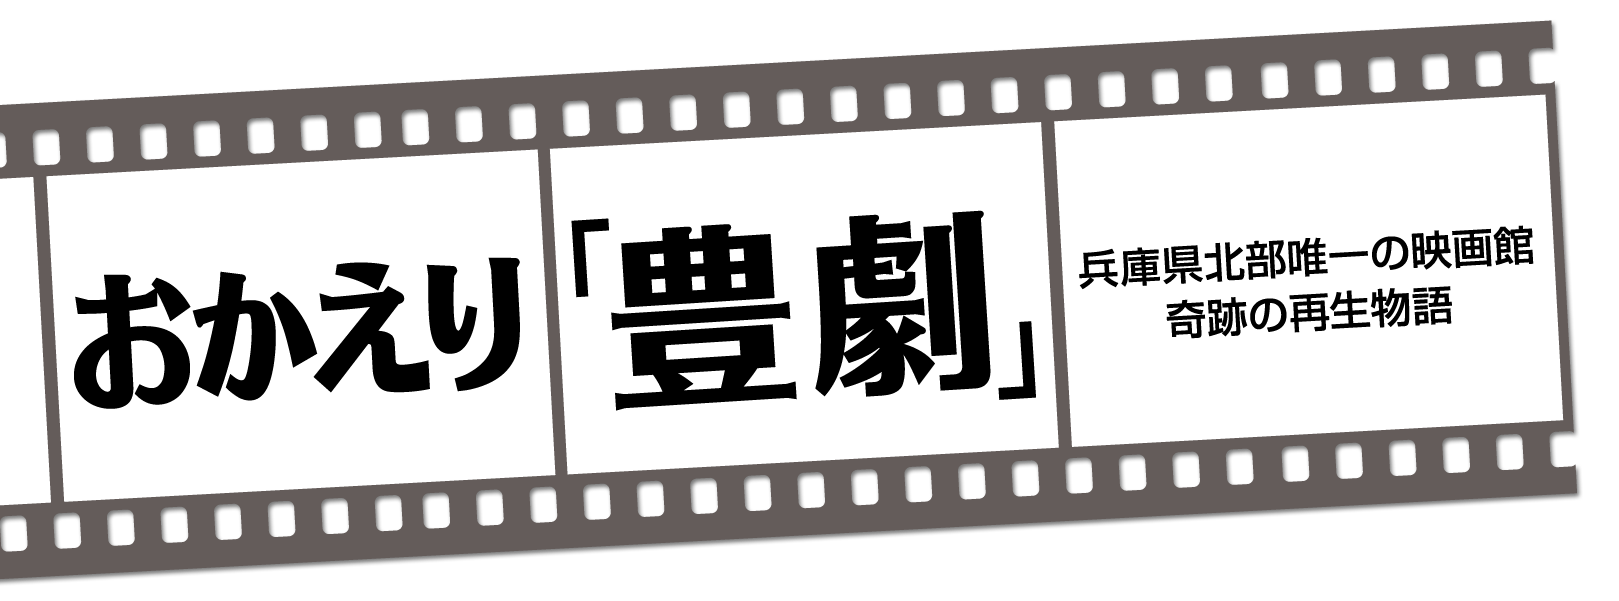 おかえり「豊劇」 兵庫県北部唯一の映画館 奇跡の再生物語